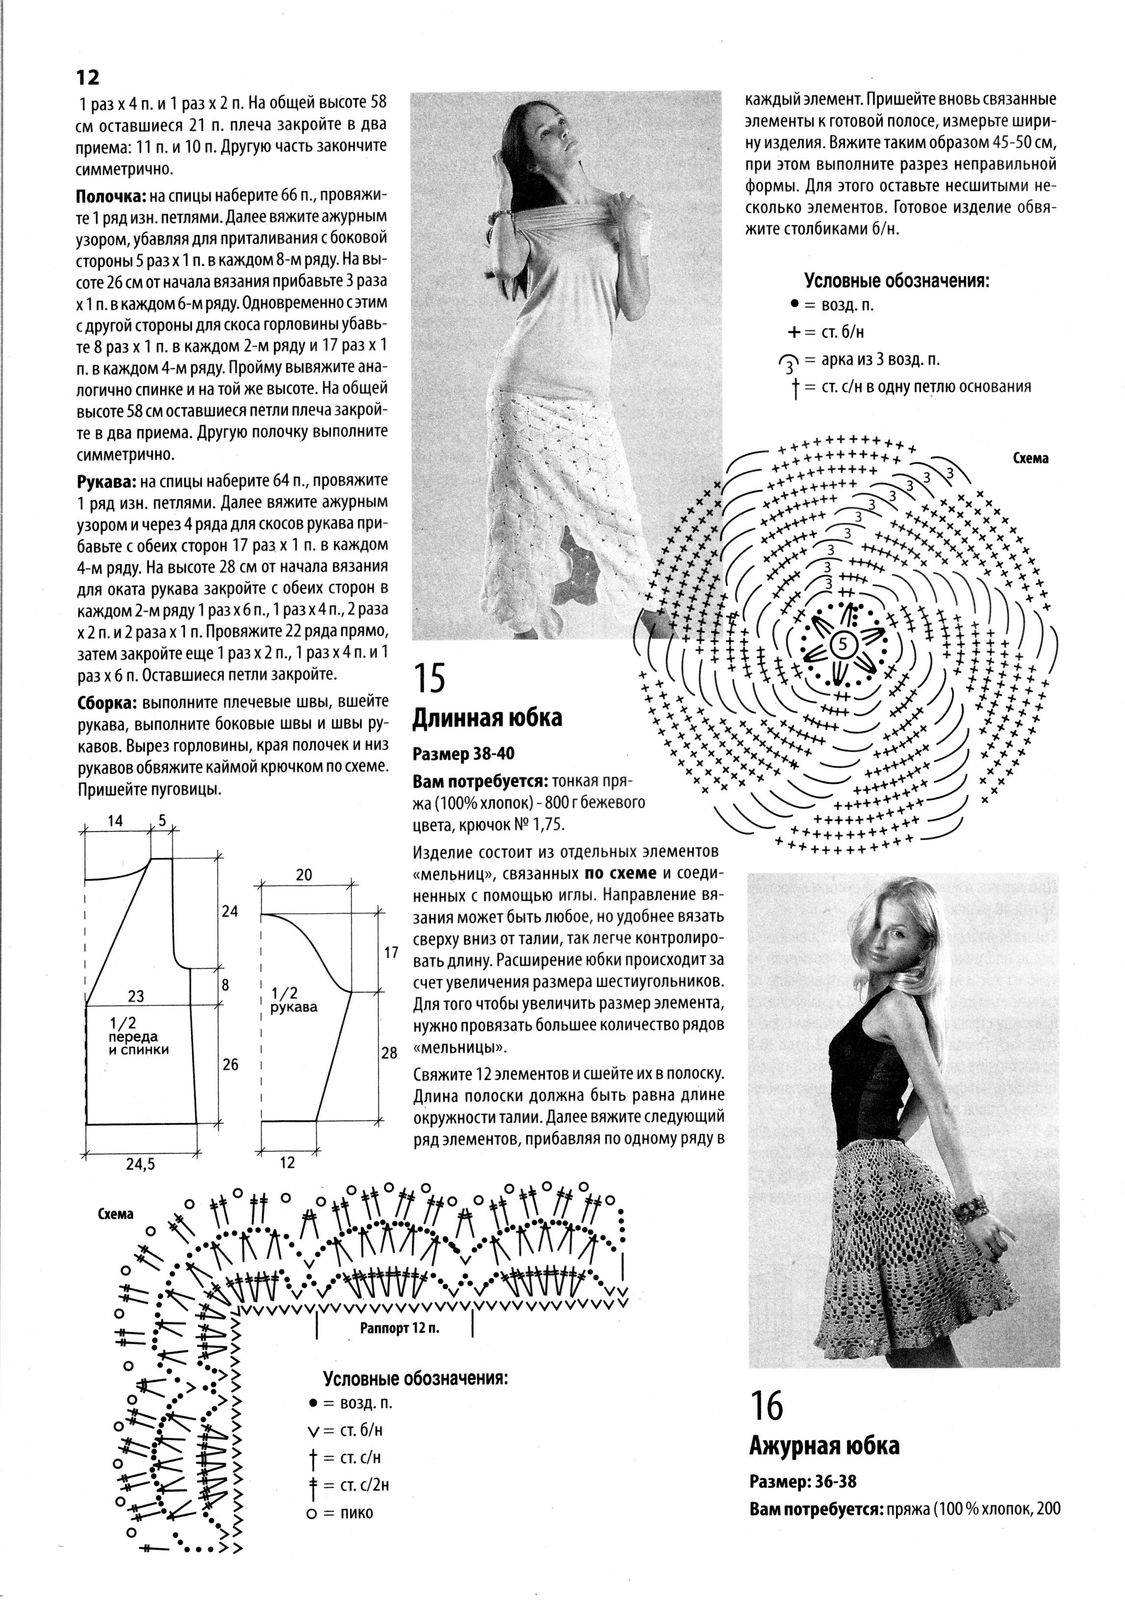 Юбка крючком со схемами вязания и описанием для дам разного возраста